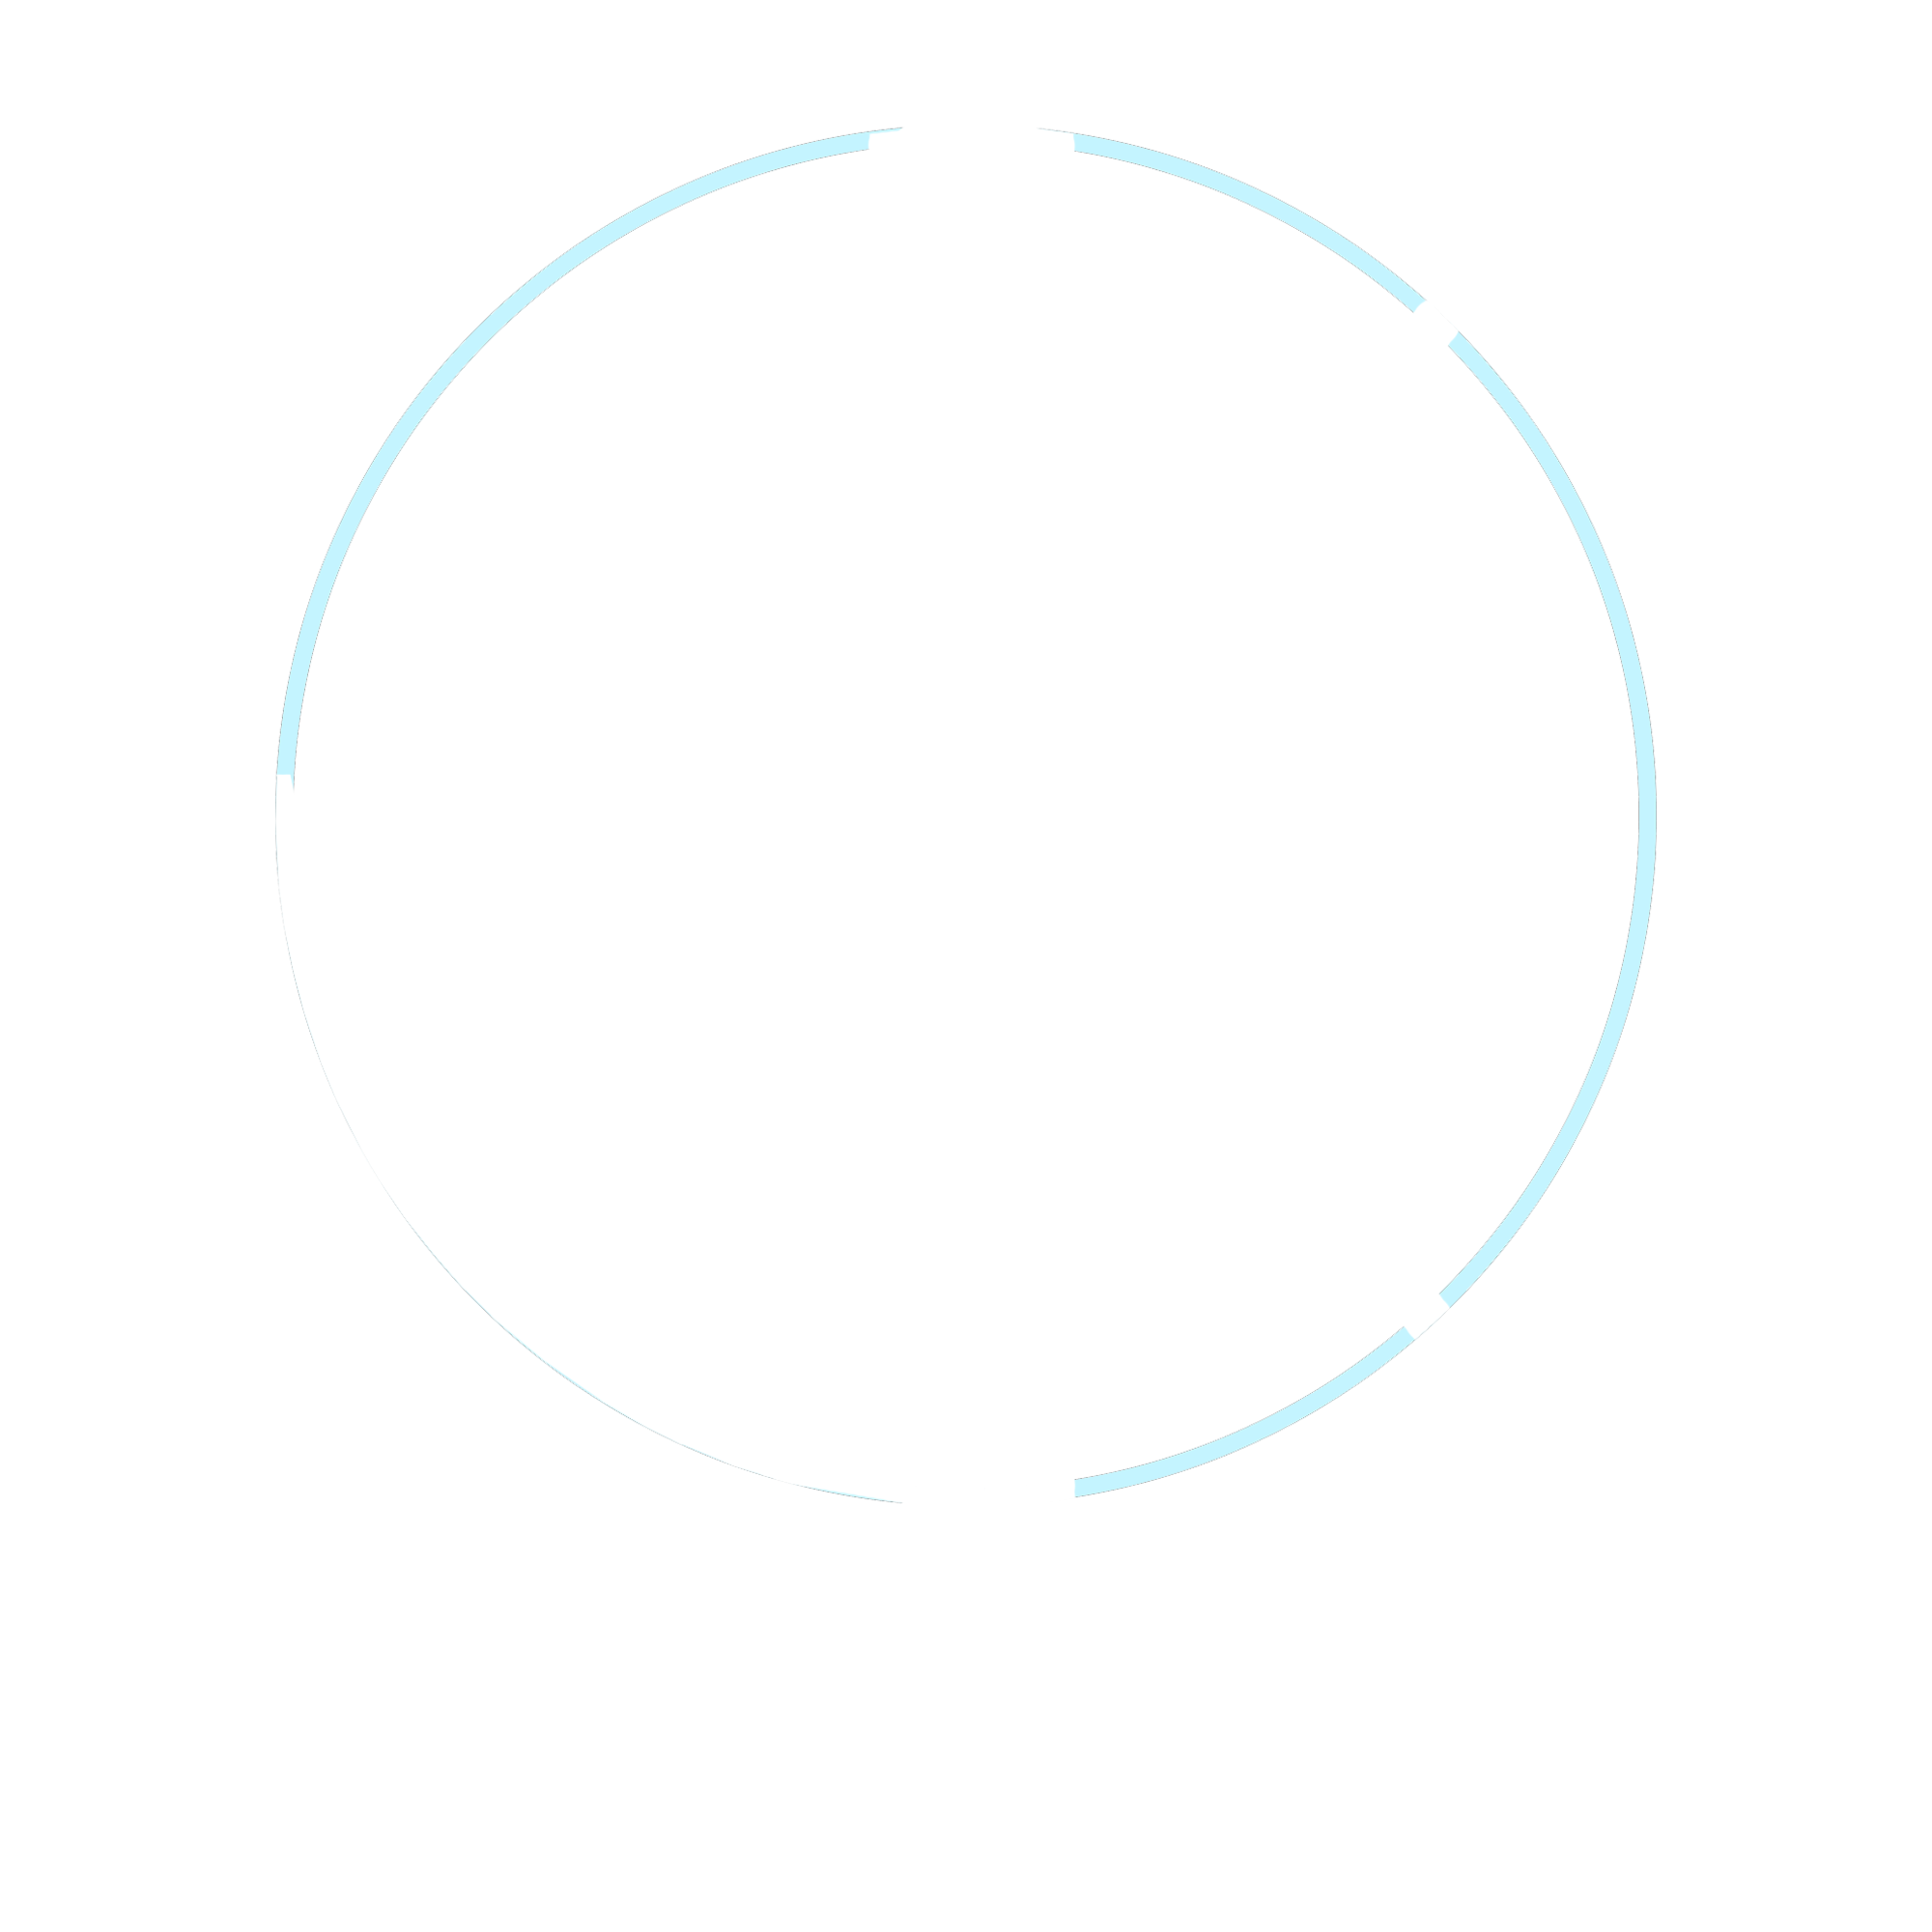 Jordan Keith